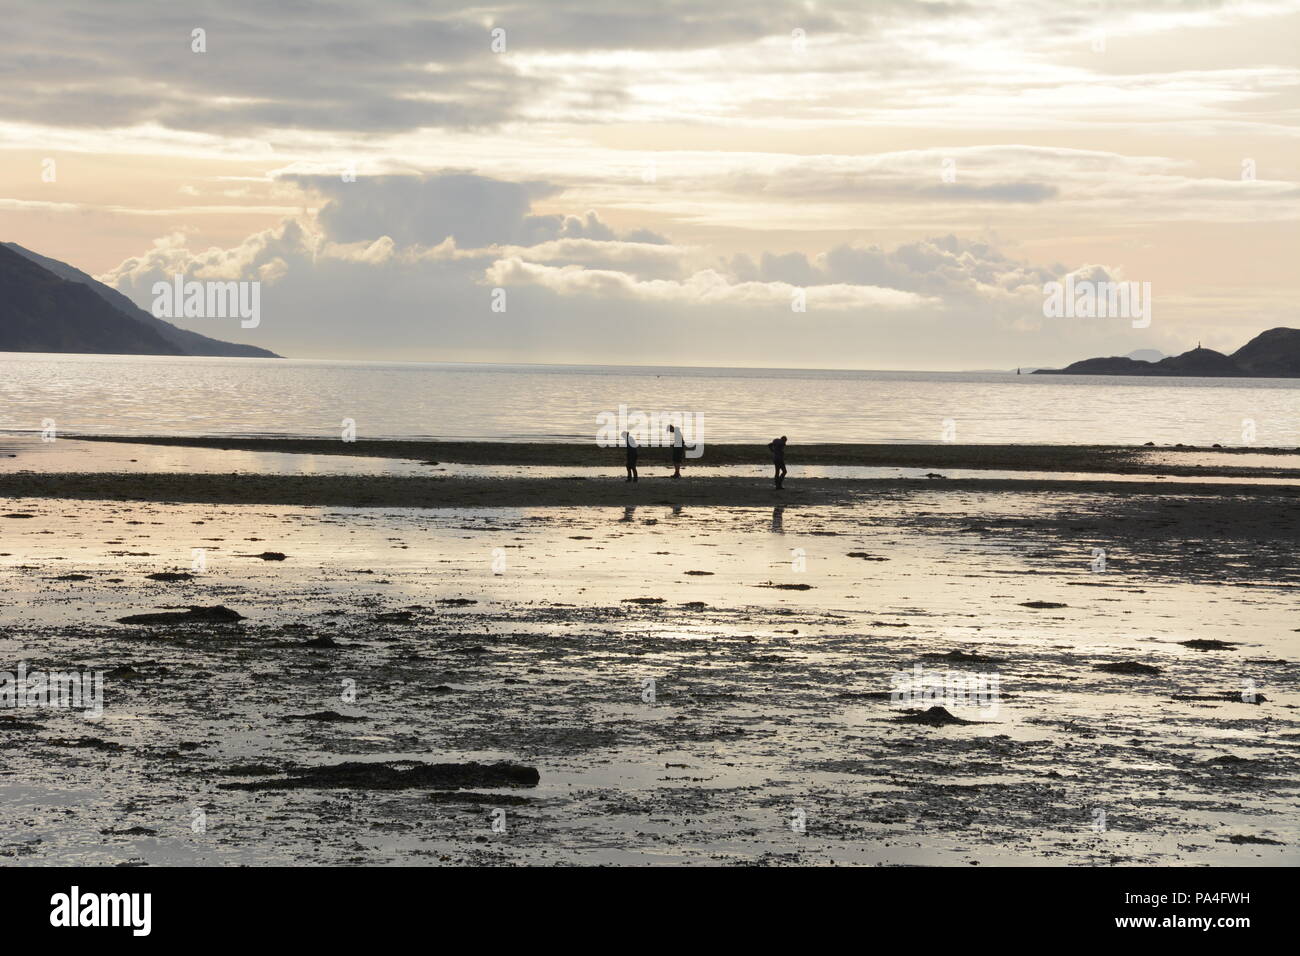 Tre persone beachcombing in zona intercotidale dell'Oceano Atlantico al tramonto nella città di Inverie, Knoydart Penisola, Scotland, Regno Unito. Foto Stock